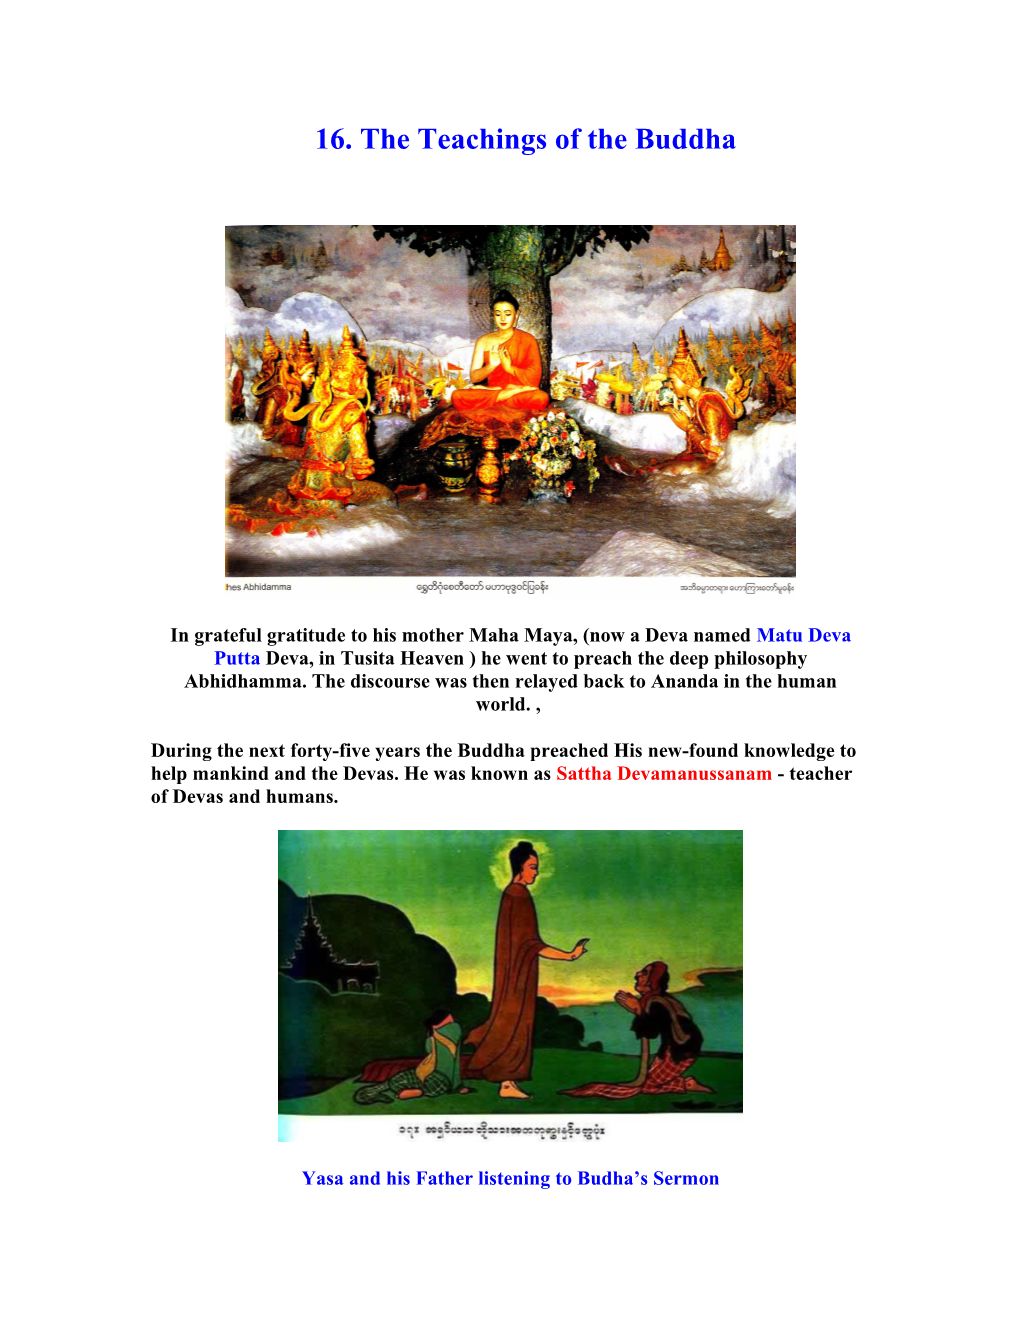 16. the Teachings of the Buddha